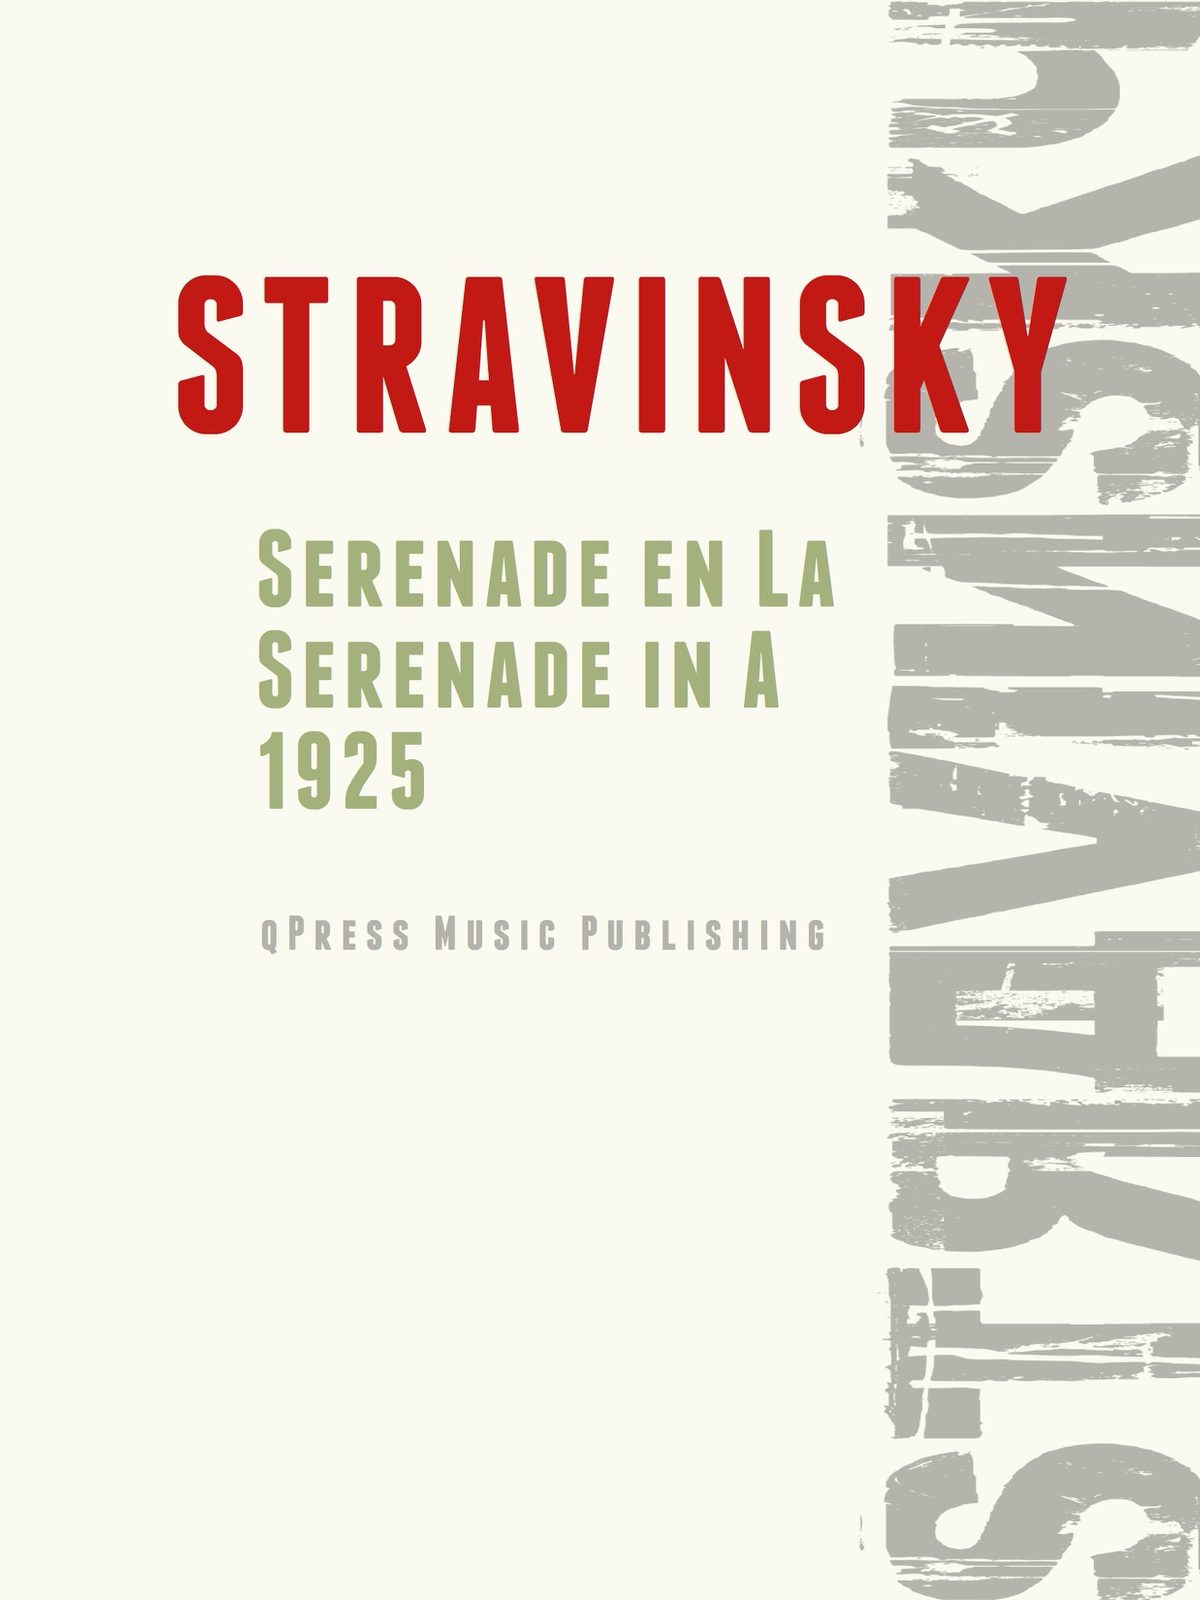 Stravinsky, Serenade en La-p01